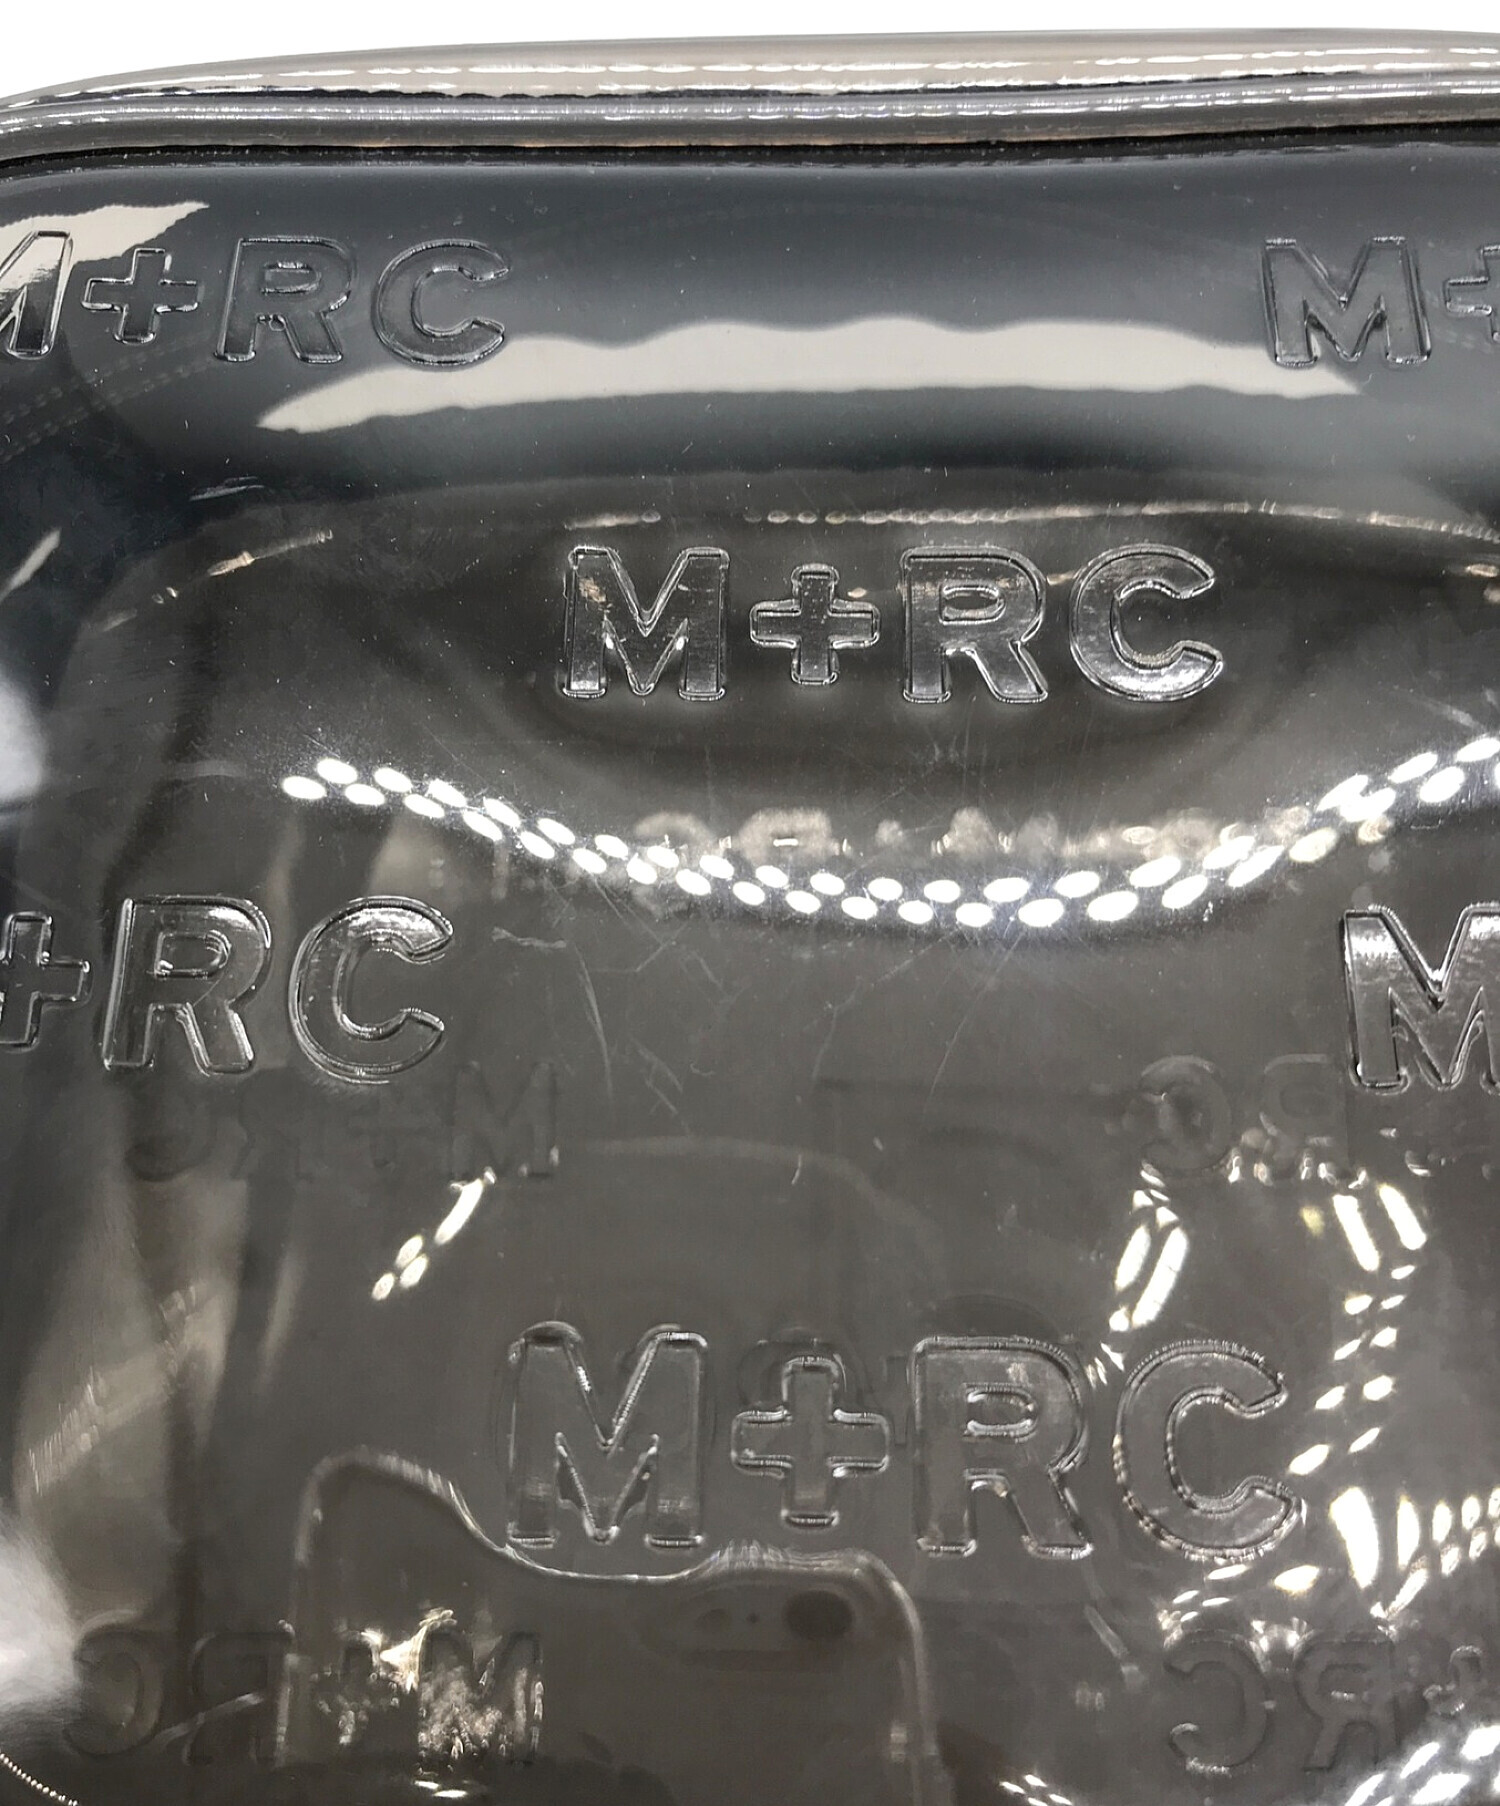 M+RC NOIR PVC BLACK TRANSPARENT bag